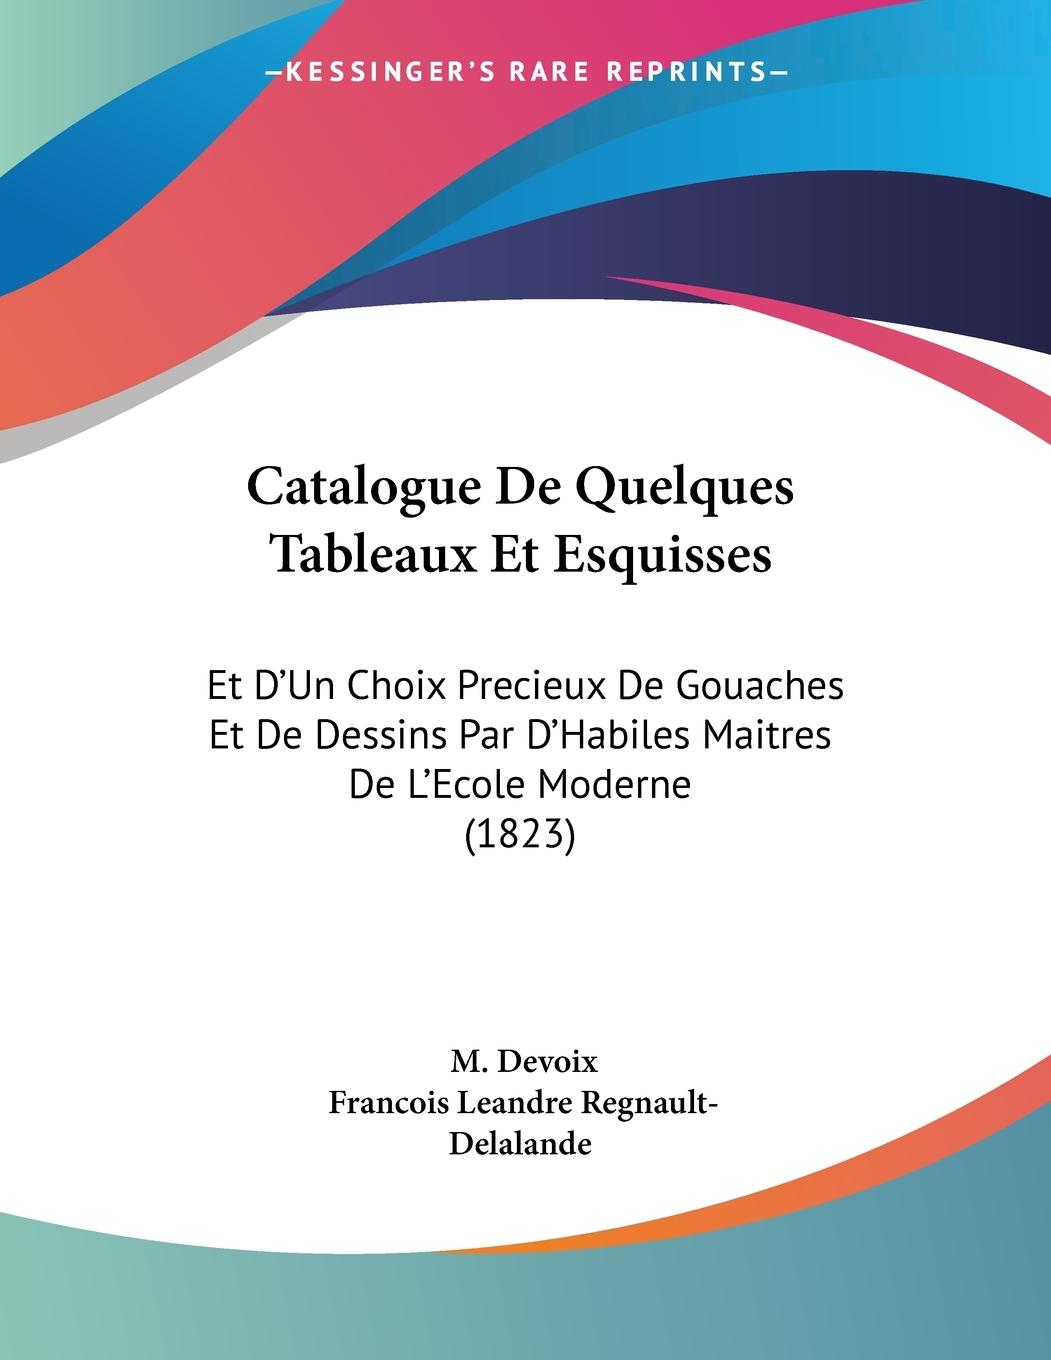 Catalogue De Quelques Tableaux Et Esquisses - Devoix, M. Regnault-Delalande, Francois Leandre